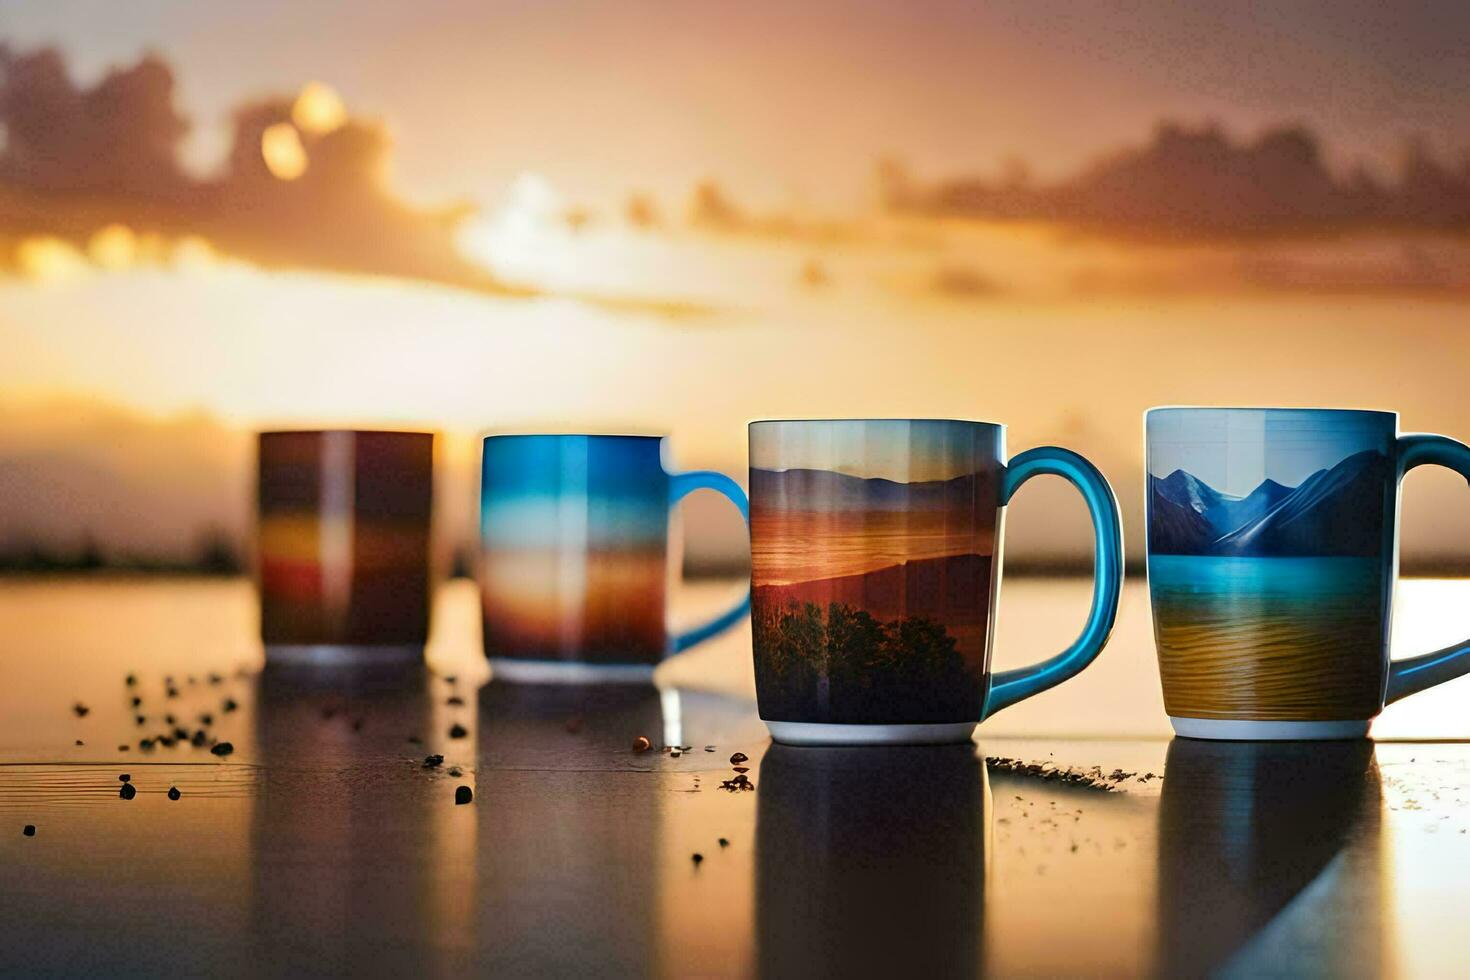 cinco café canecas com diferente As fotos em eles. gerado por IA